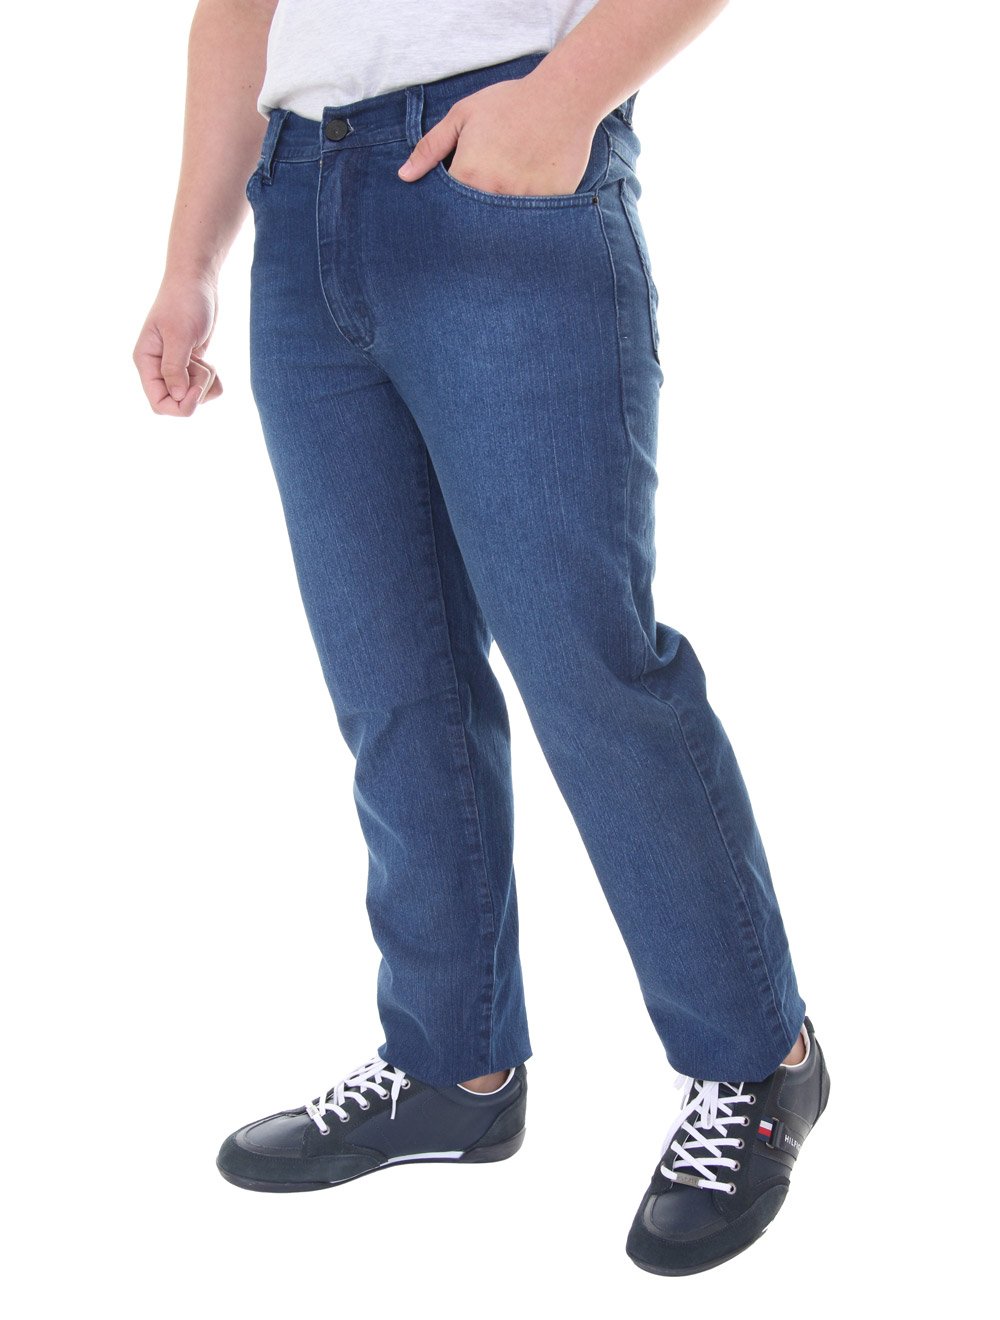 Calça Aramis Jeans Masculina Five Pockets Move Washed Noise Azul